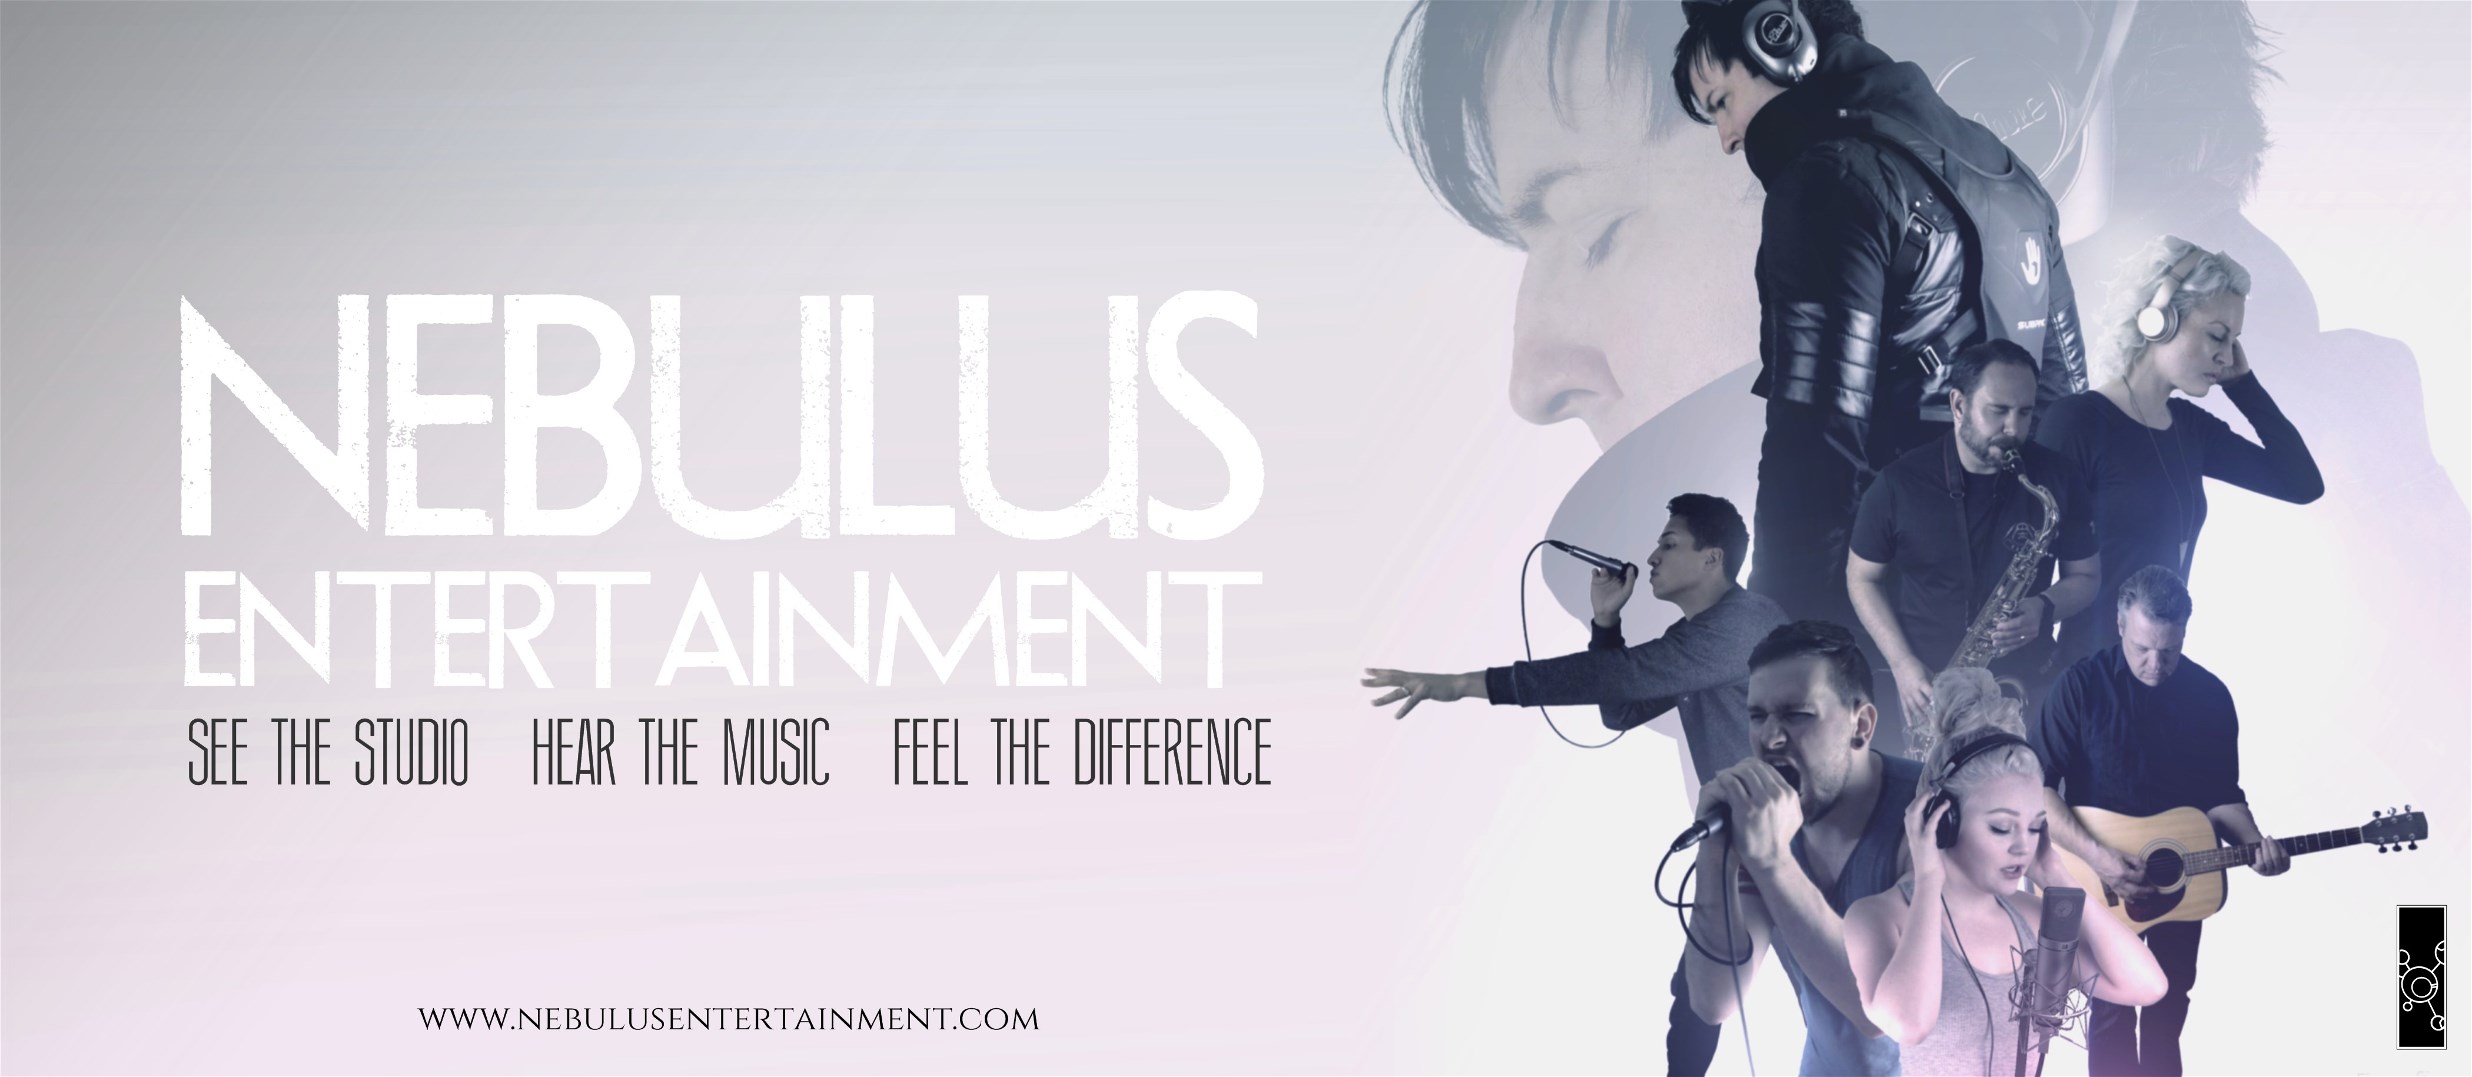 Nebulus Entertainment 2017 Banner 1